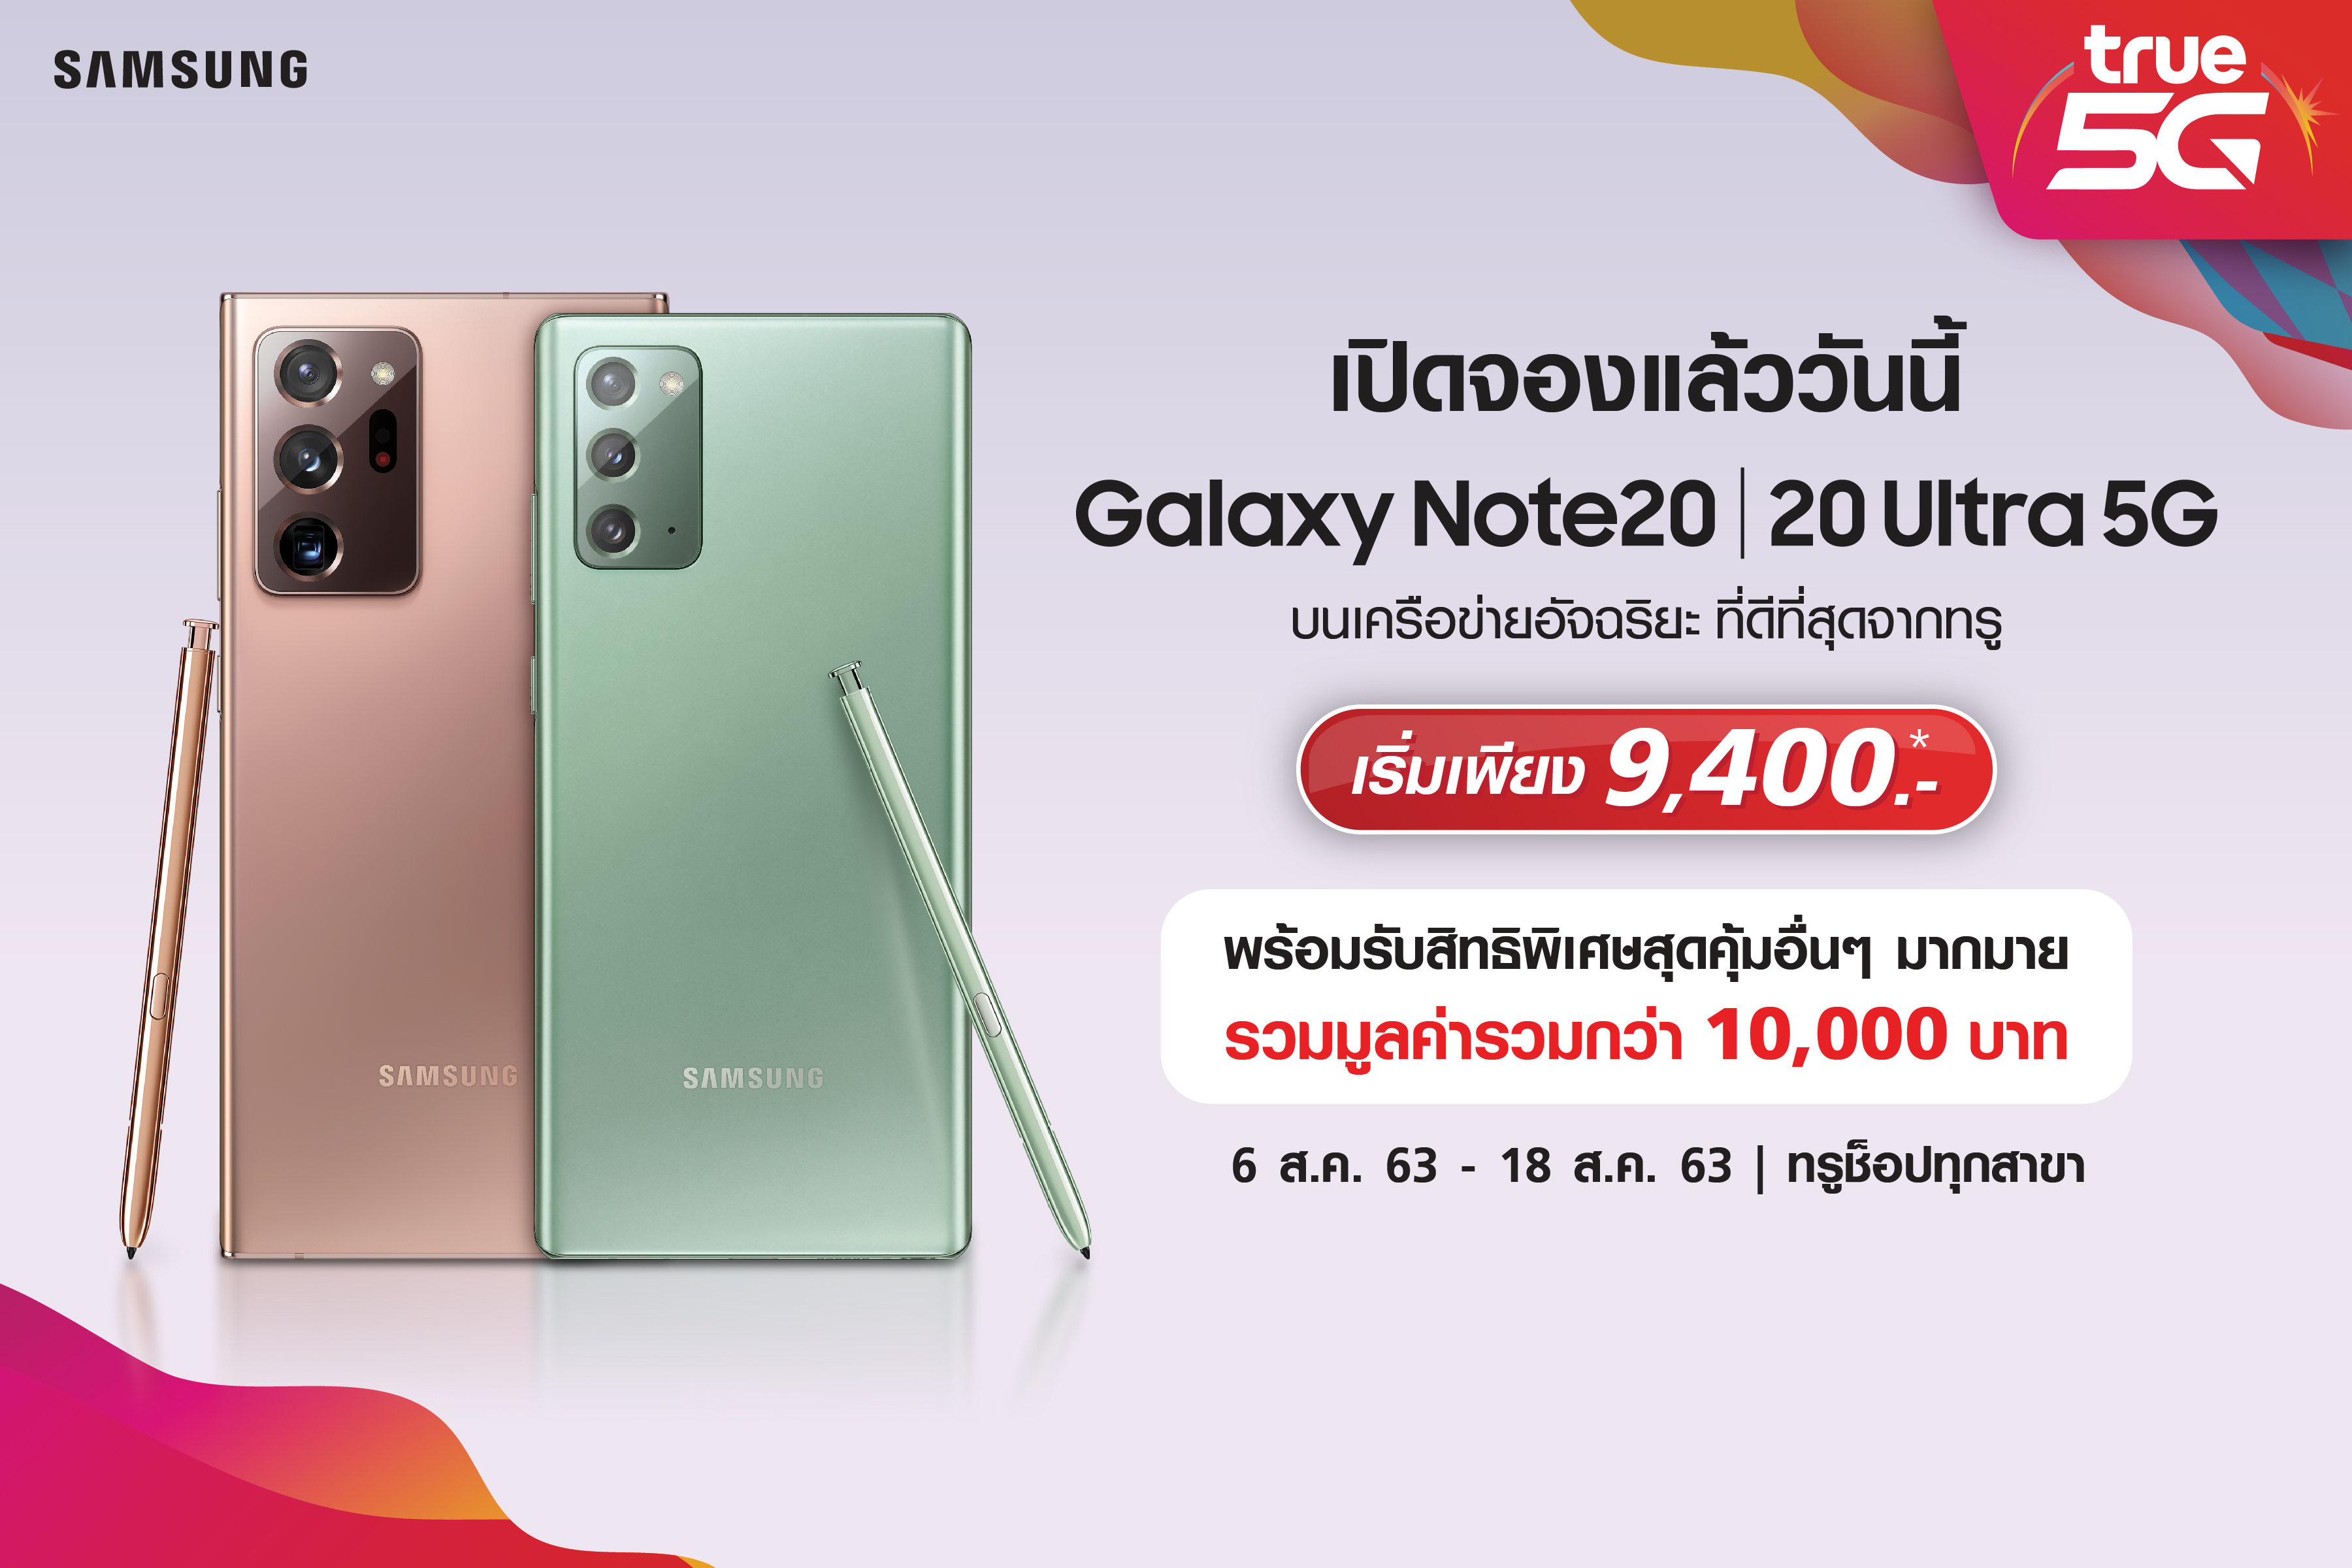 ทรูมูฟ เอช จัดเต็มข้อเสนอสุดฮอต จอง Samsung Galaxy Note 20|Note20 Ultra